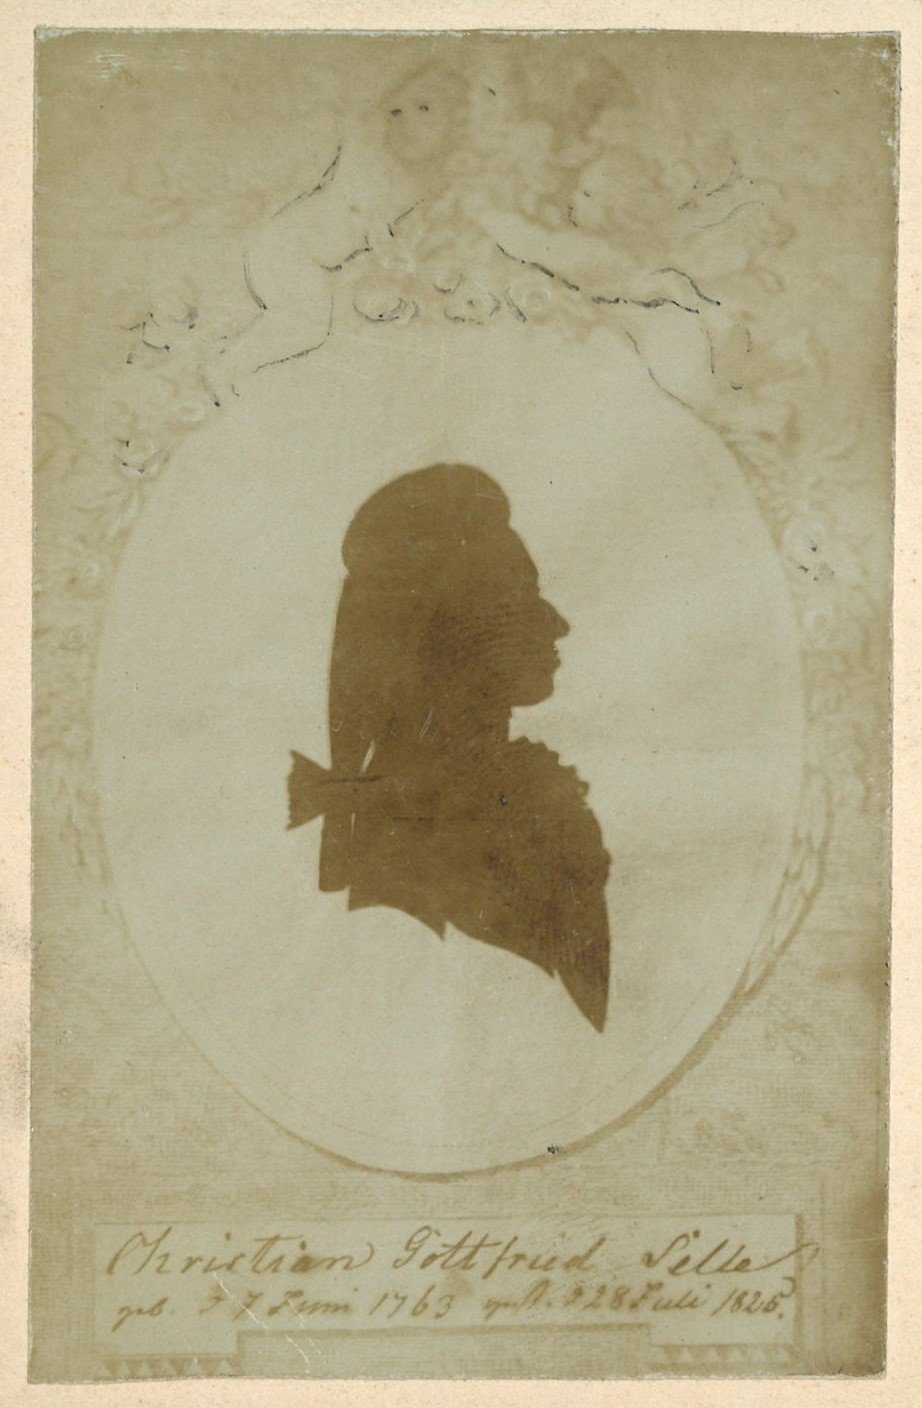 Selle, Christian Gottfried (1763-1825) (Scherenschnitt) (Landesgeschichtliche Vereinigung für die Mark Brandenburg e.V., Archiv CC BY)